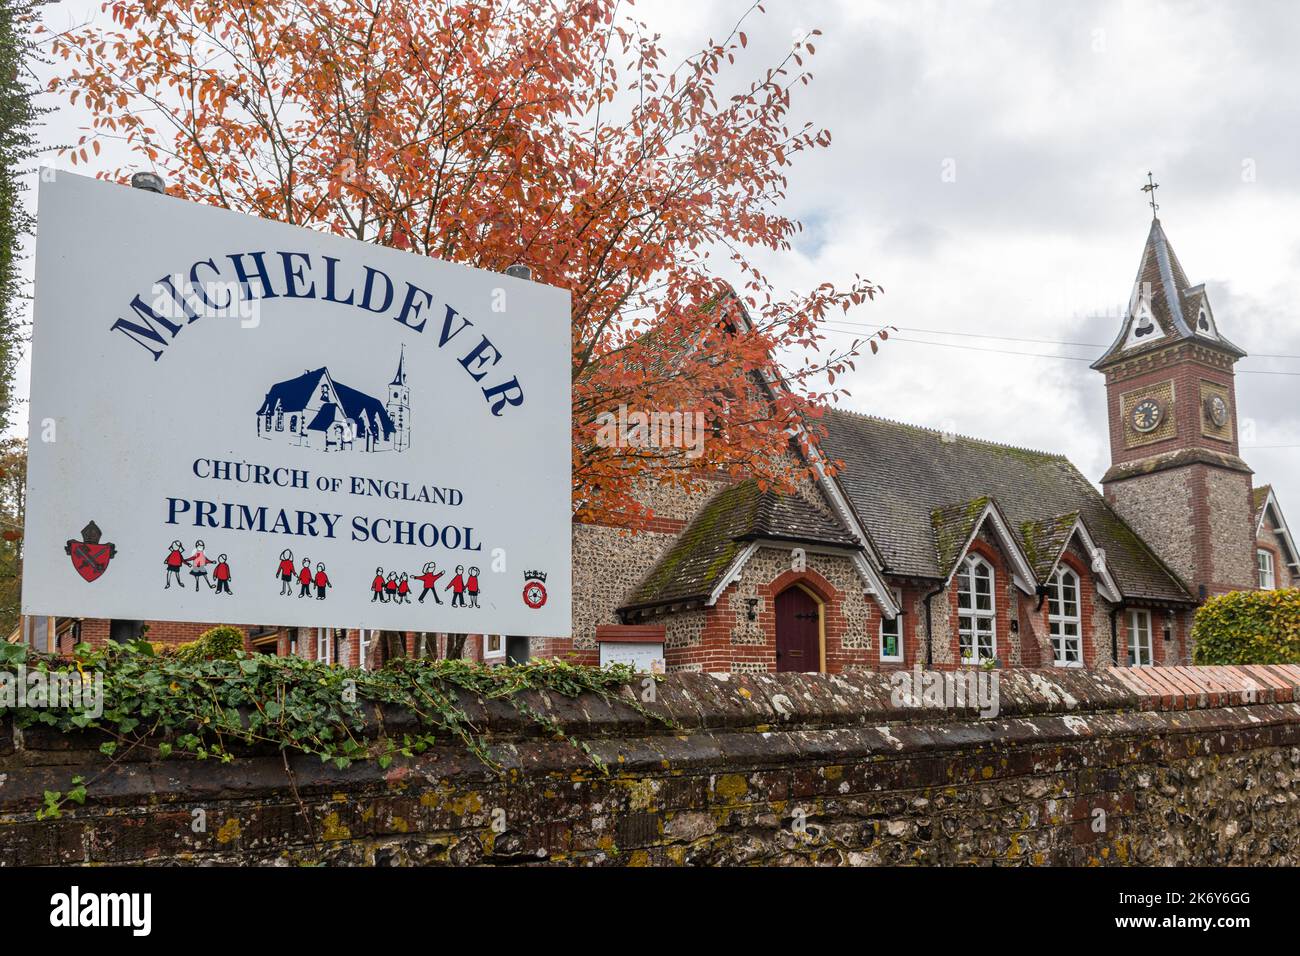 Micheldever Primary School dans le village de Micheldever, Hampshire, Angleterre, Royaume-Uni Banque D'Images